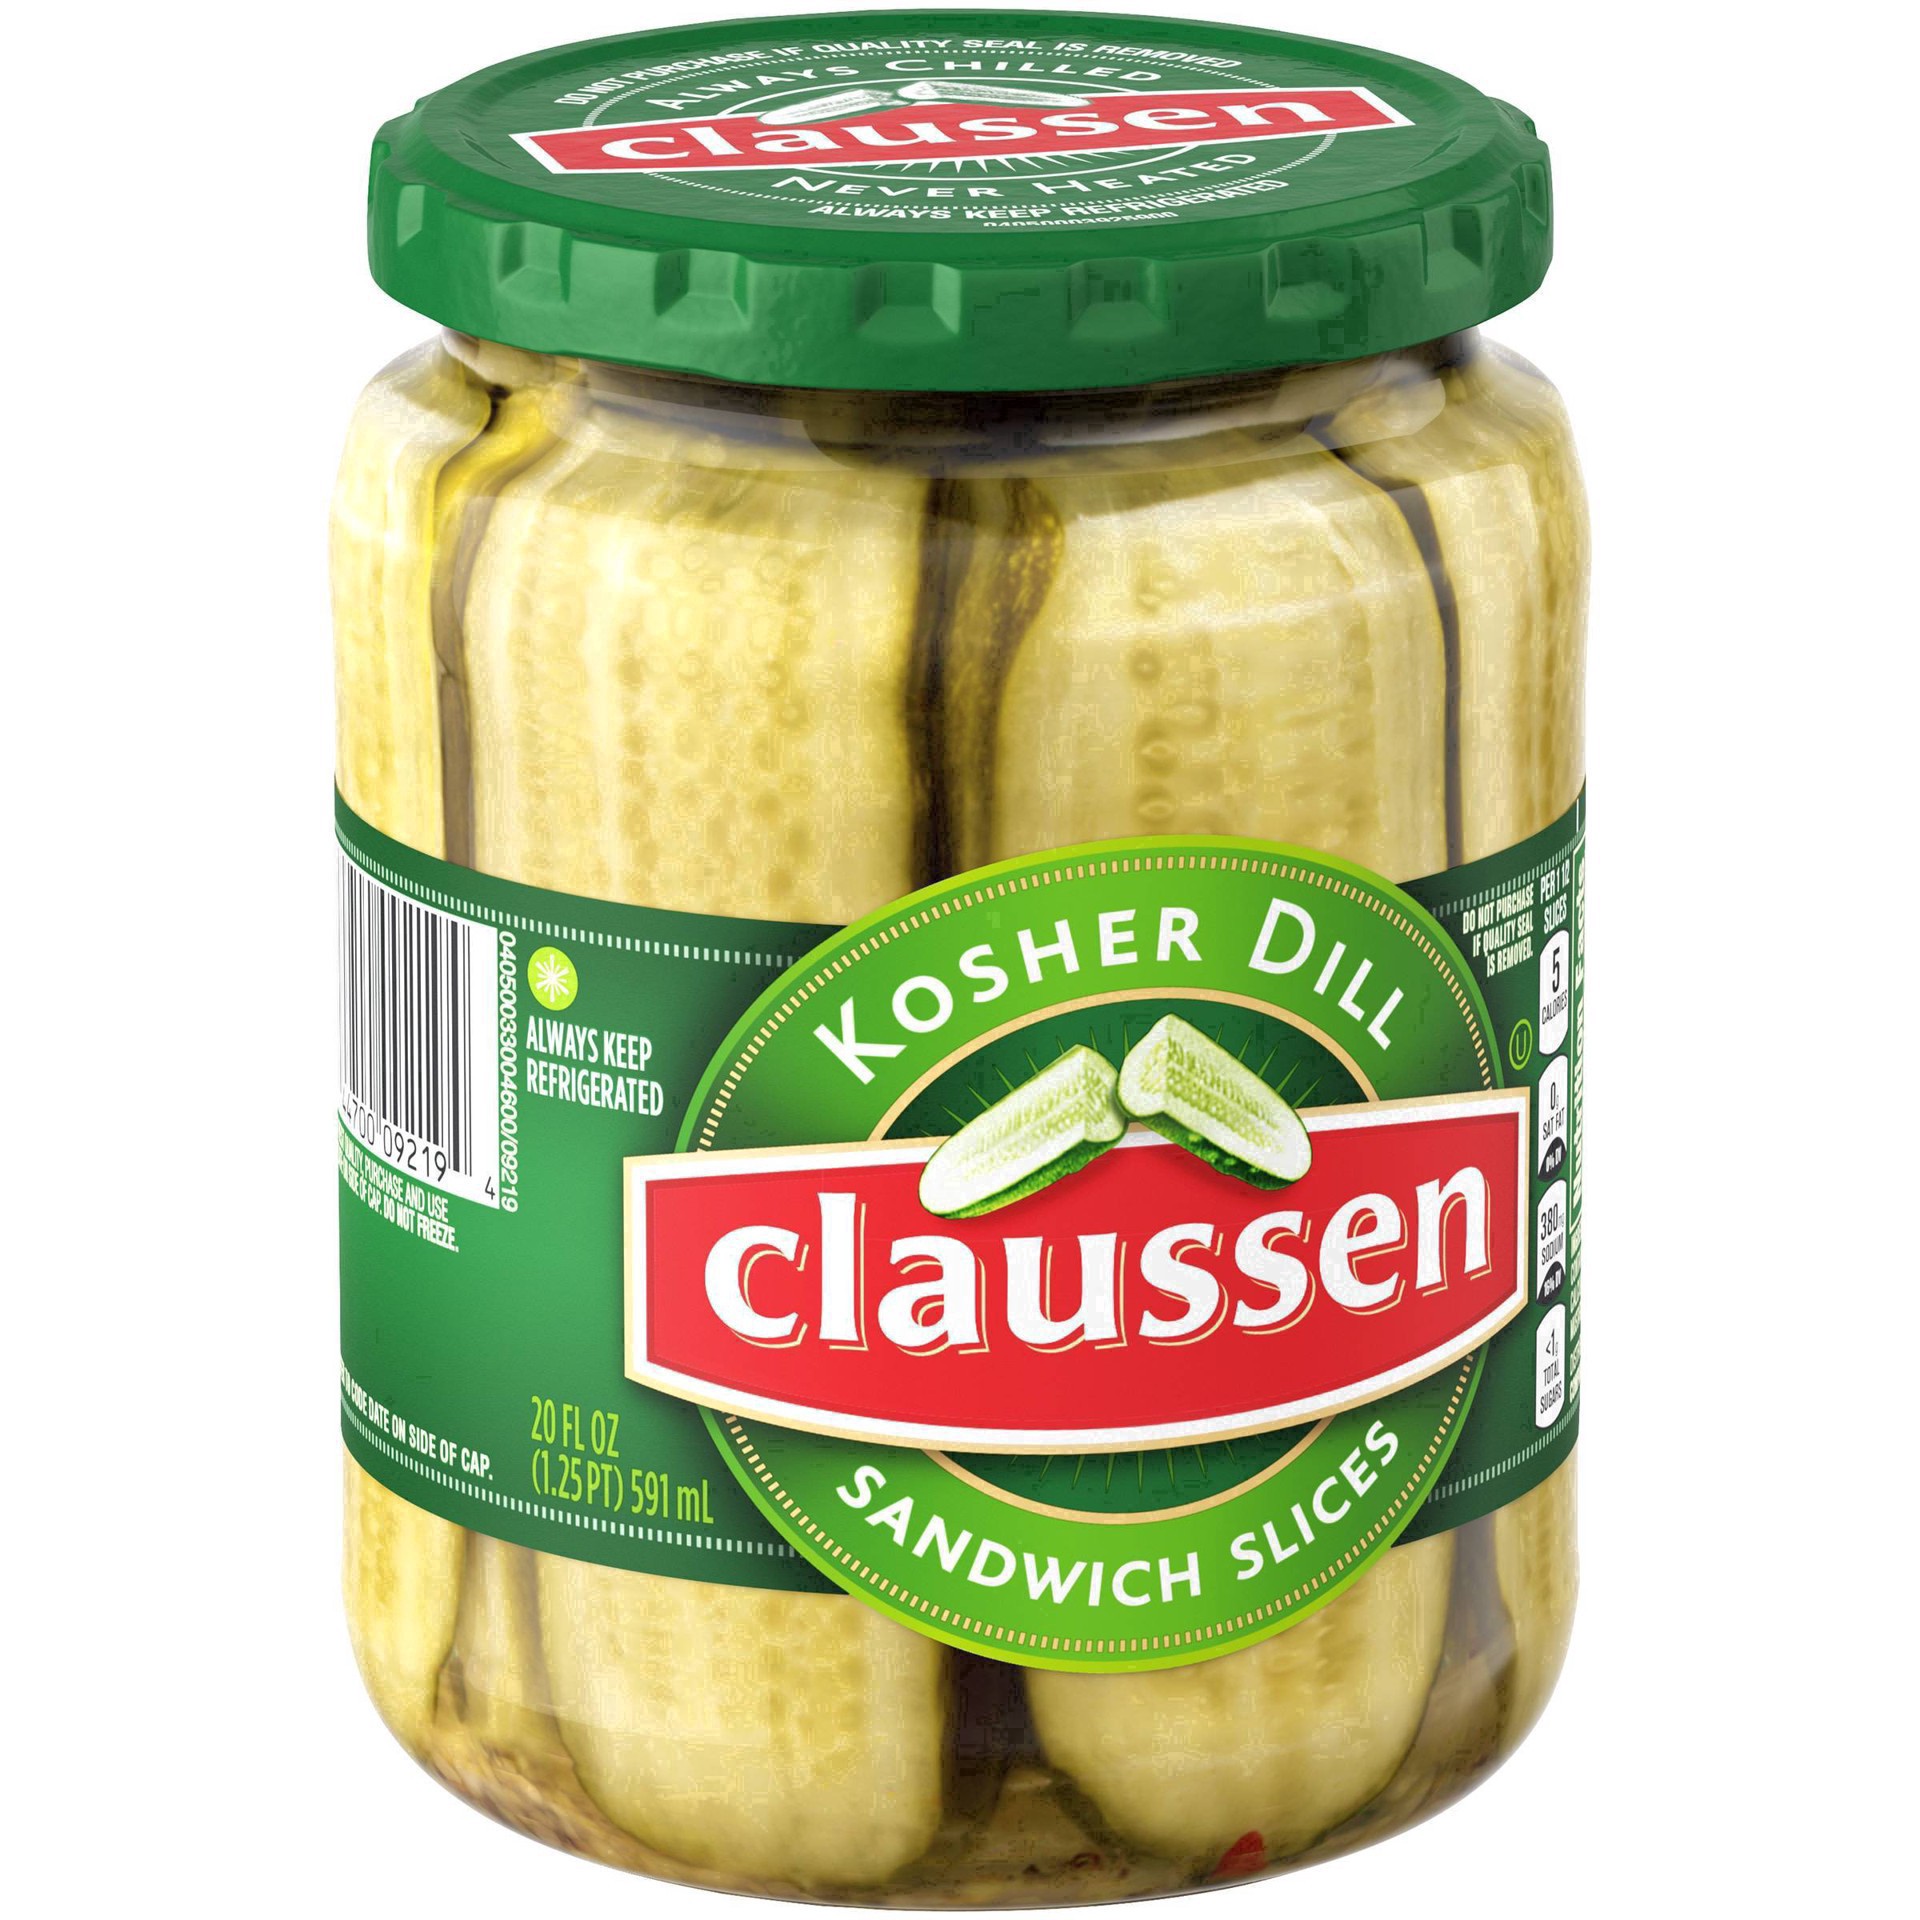 slide 83 of 144, Claussen Kosher Dill Pickle Sandwich Slices, 20 fl. oz. Jar, 20 fl oz